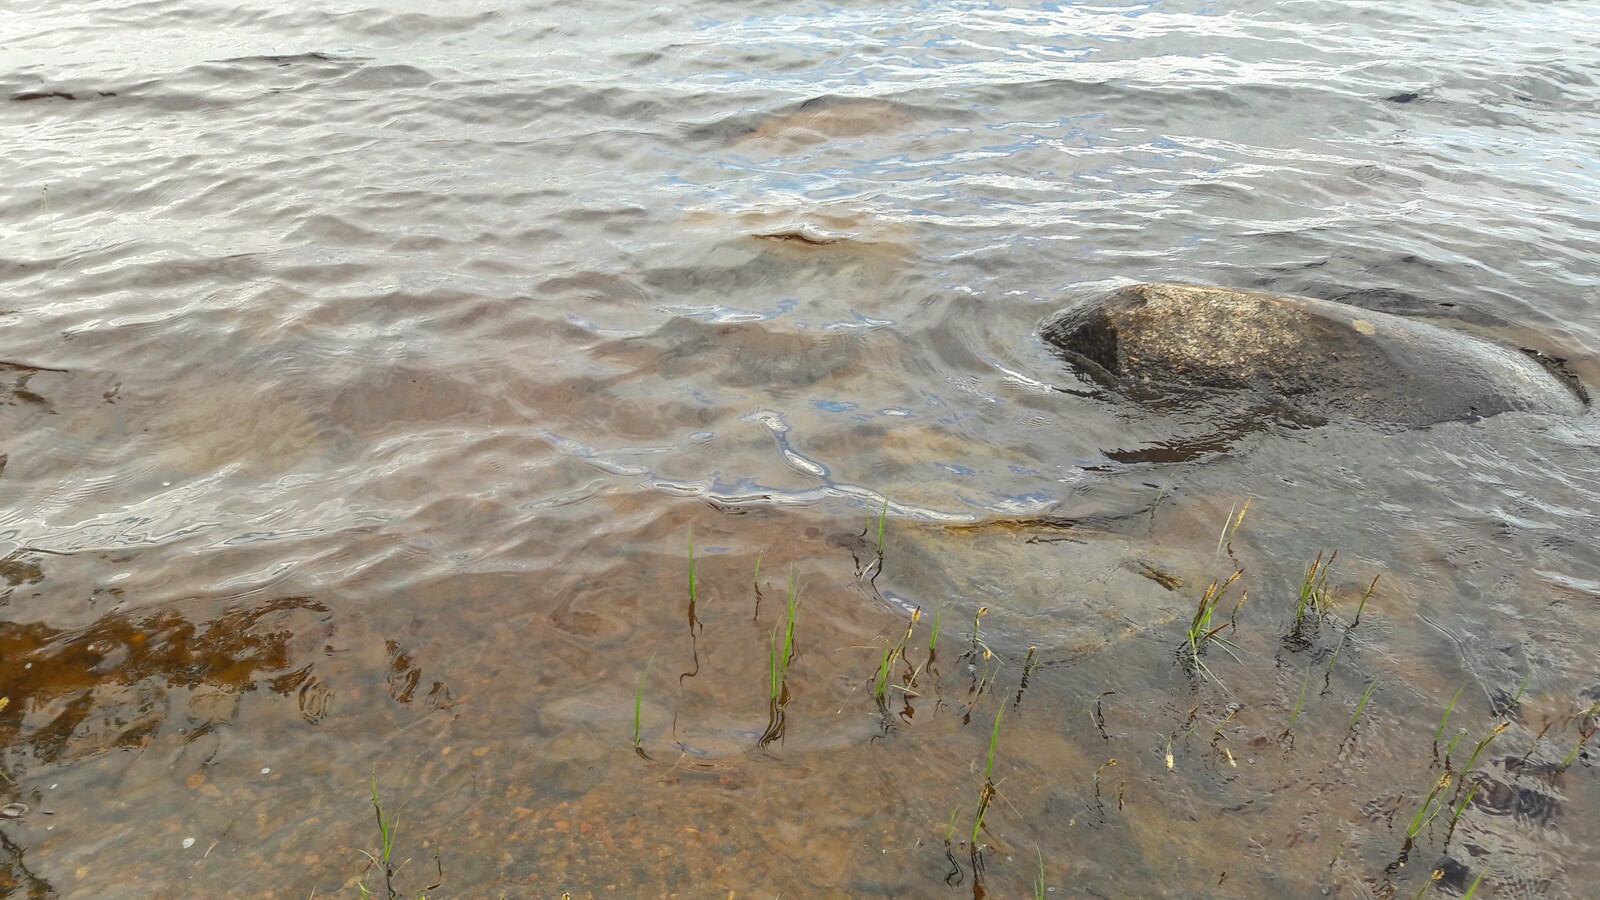 Kirkkaan veden läpi erottuu järven hiekkapohja. Rantavedessä on kivi ja vesikasveja.